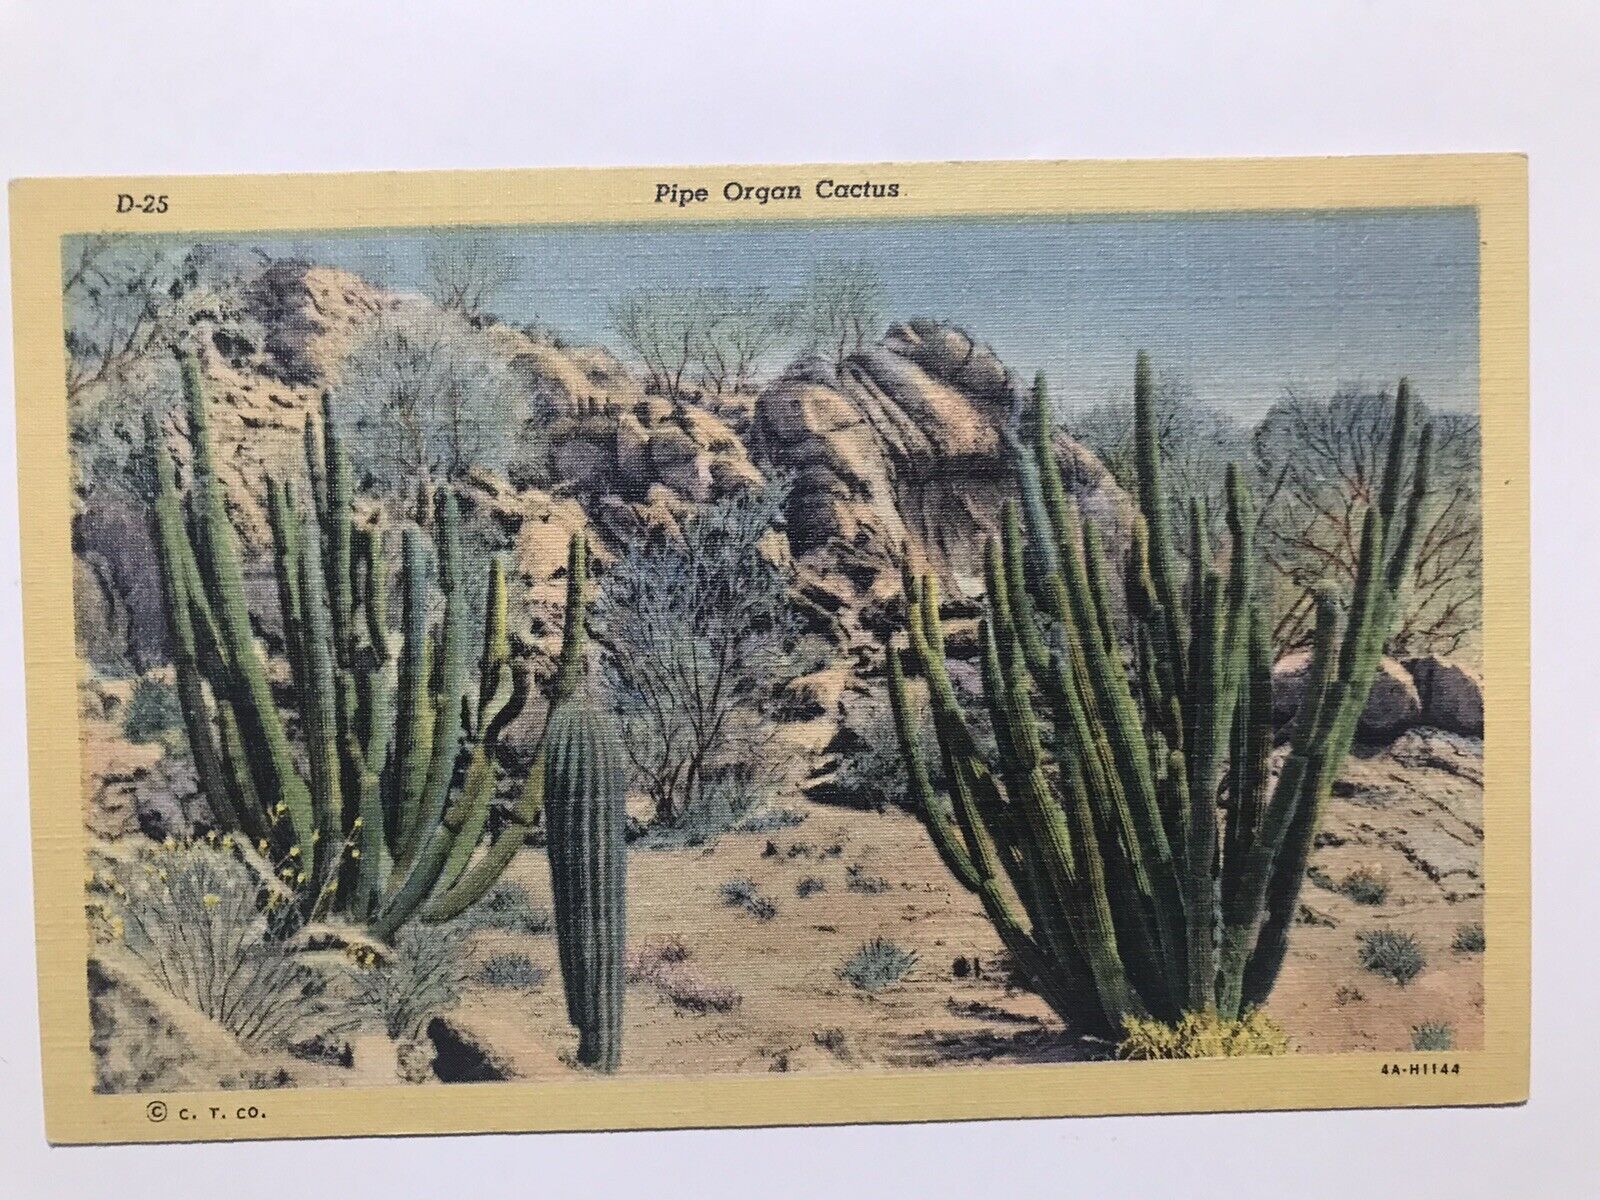 1940 Pipe Organ Cactus Postcard